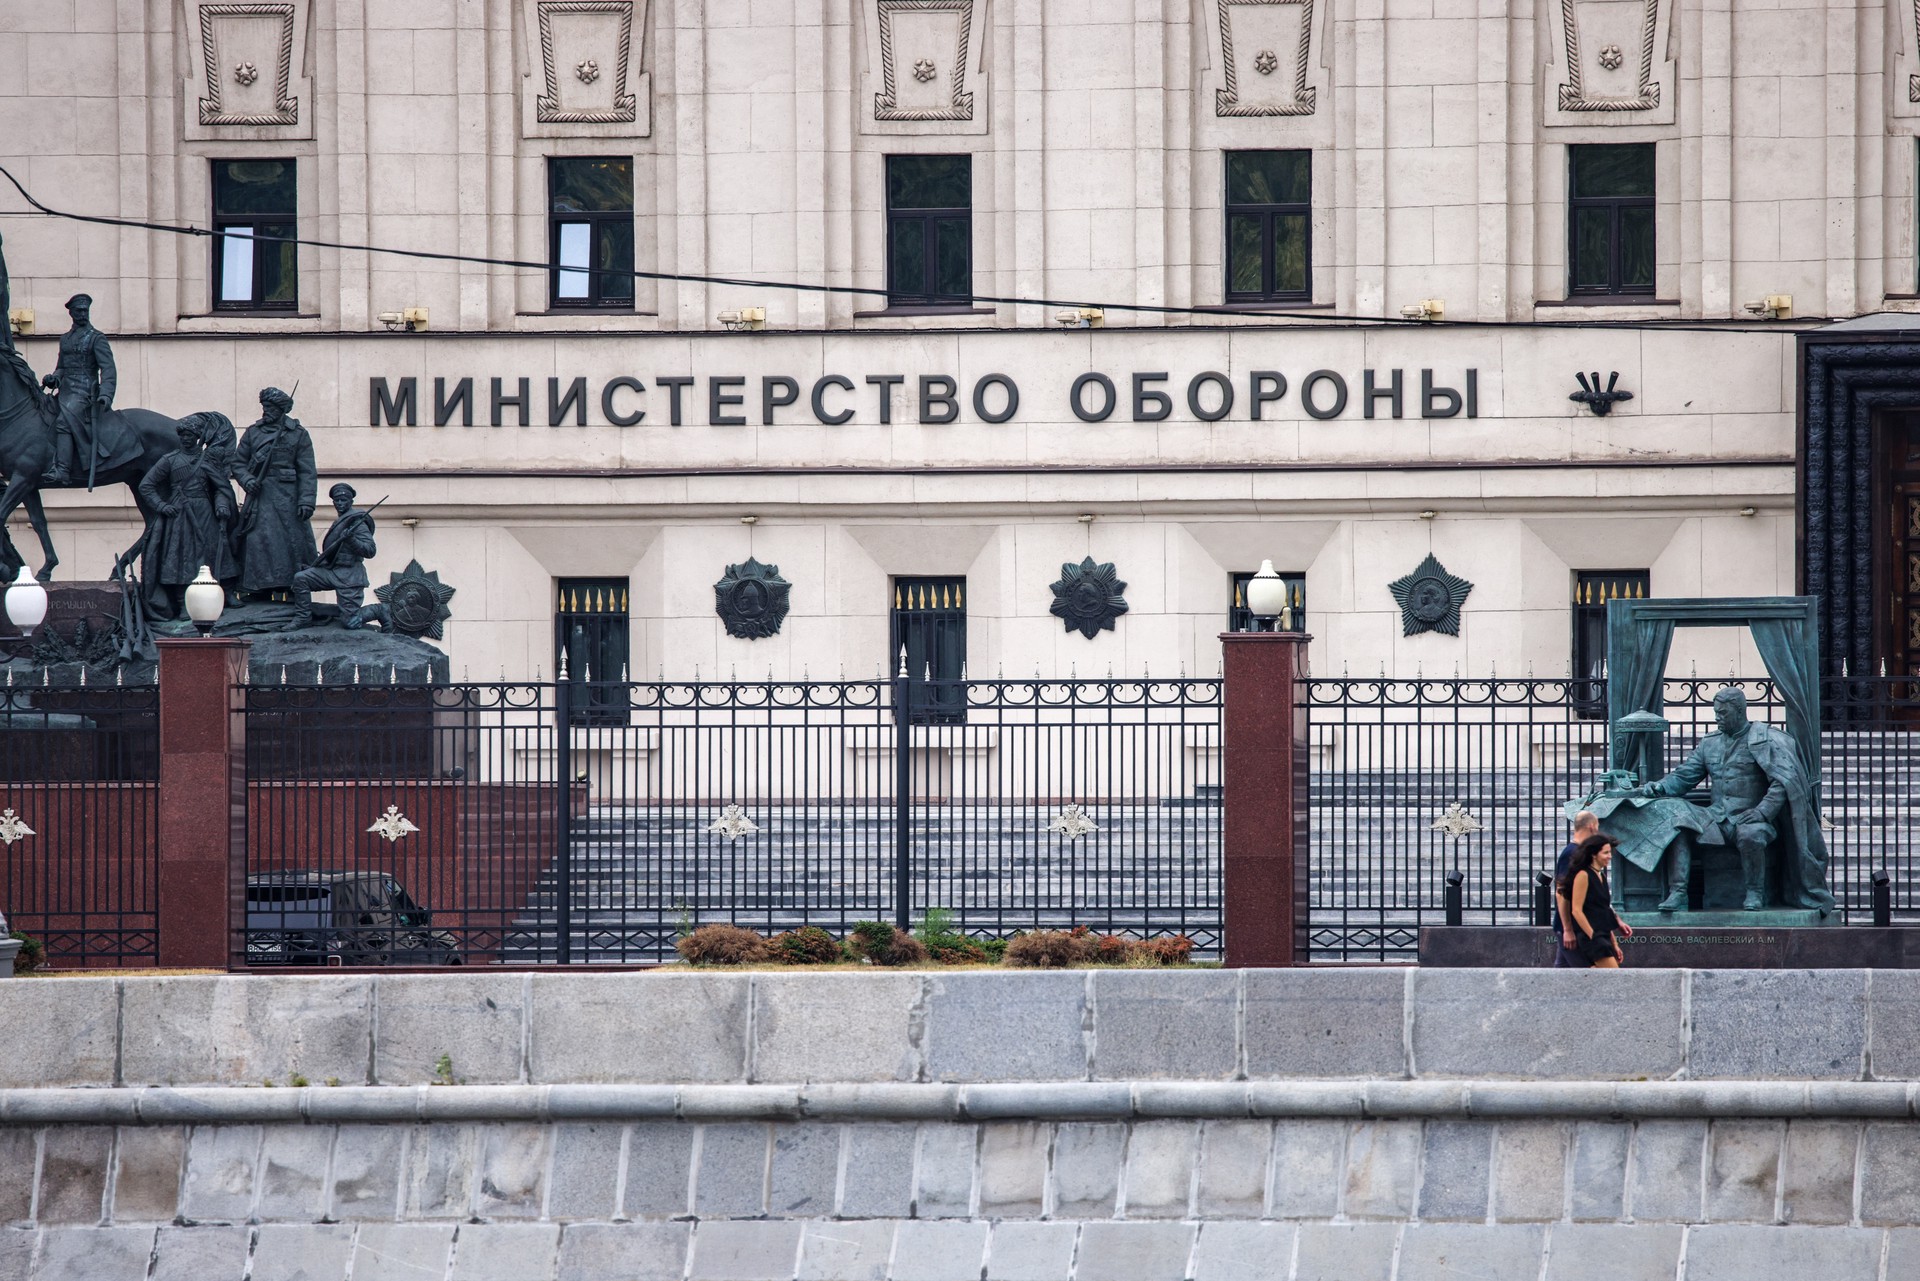 Минобороны РФ сообщило, что студентов-очников частичная мобилизация не коснётся